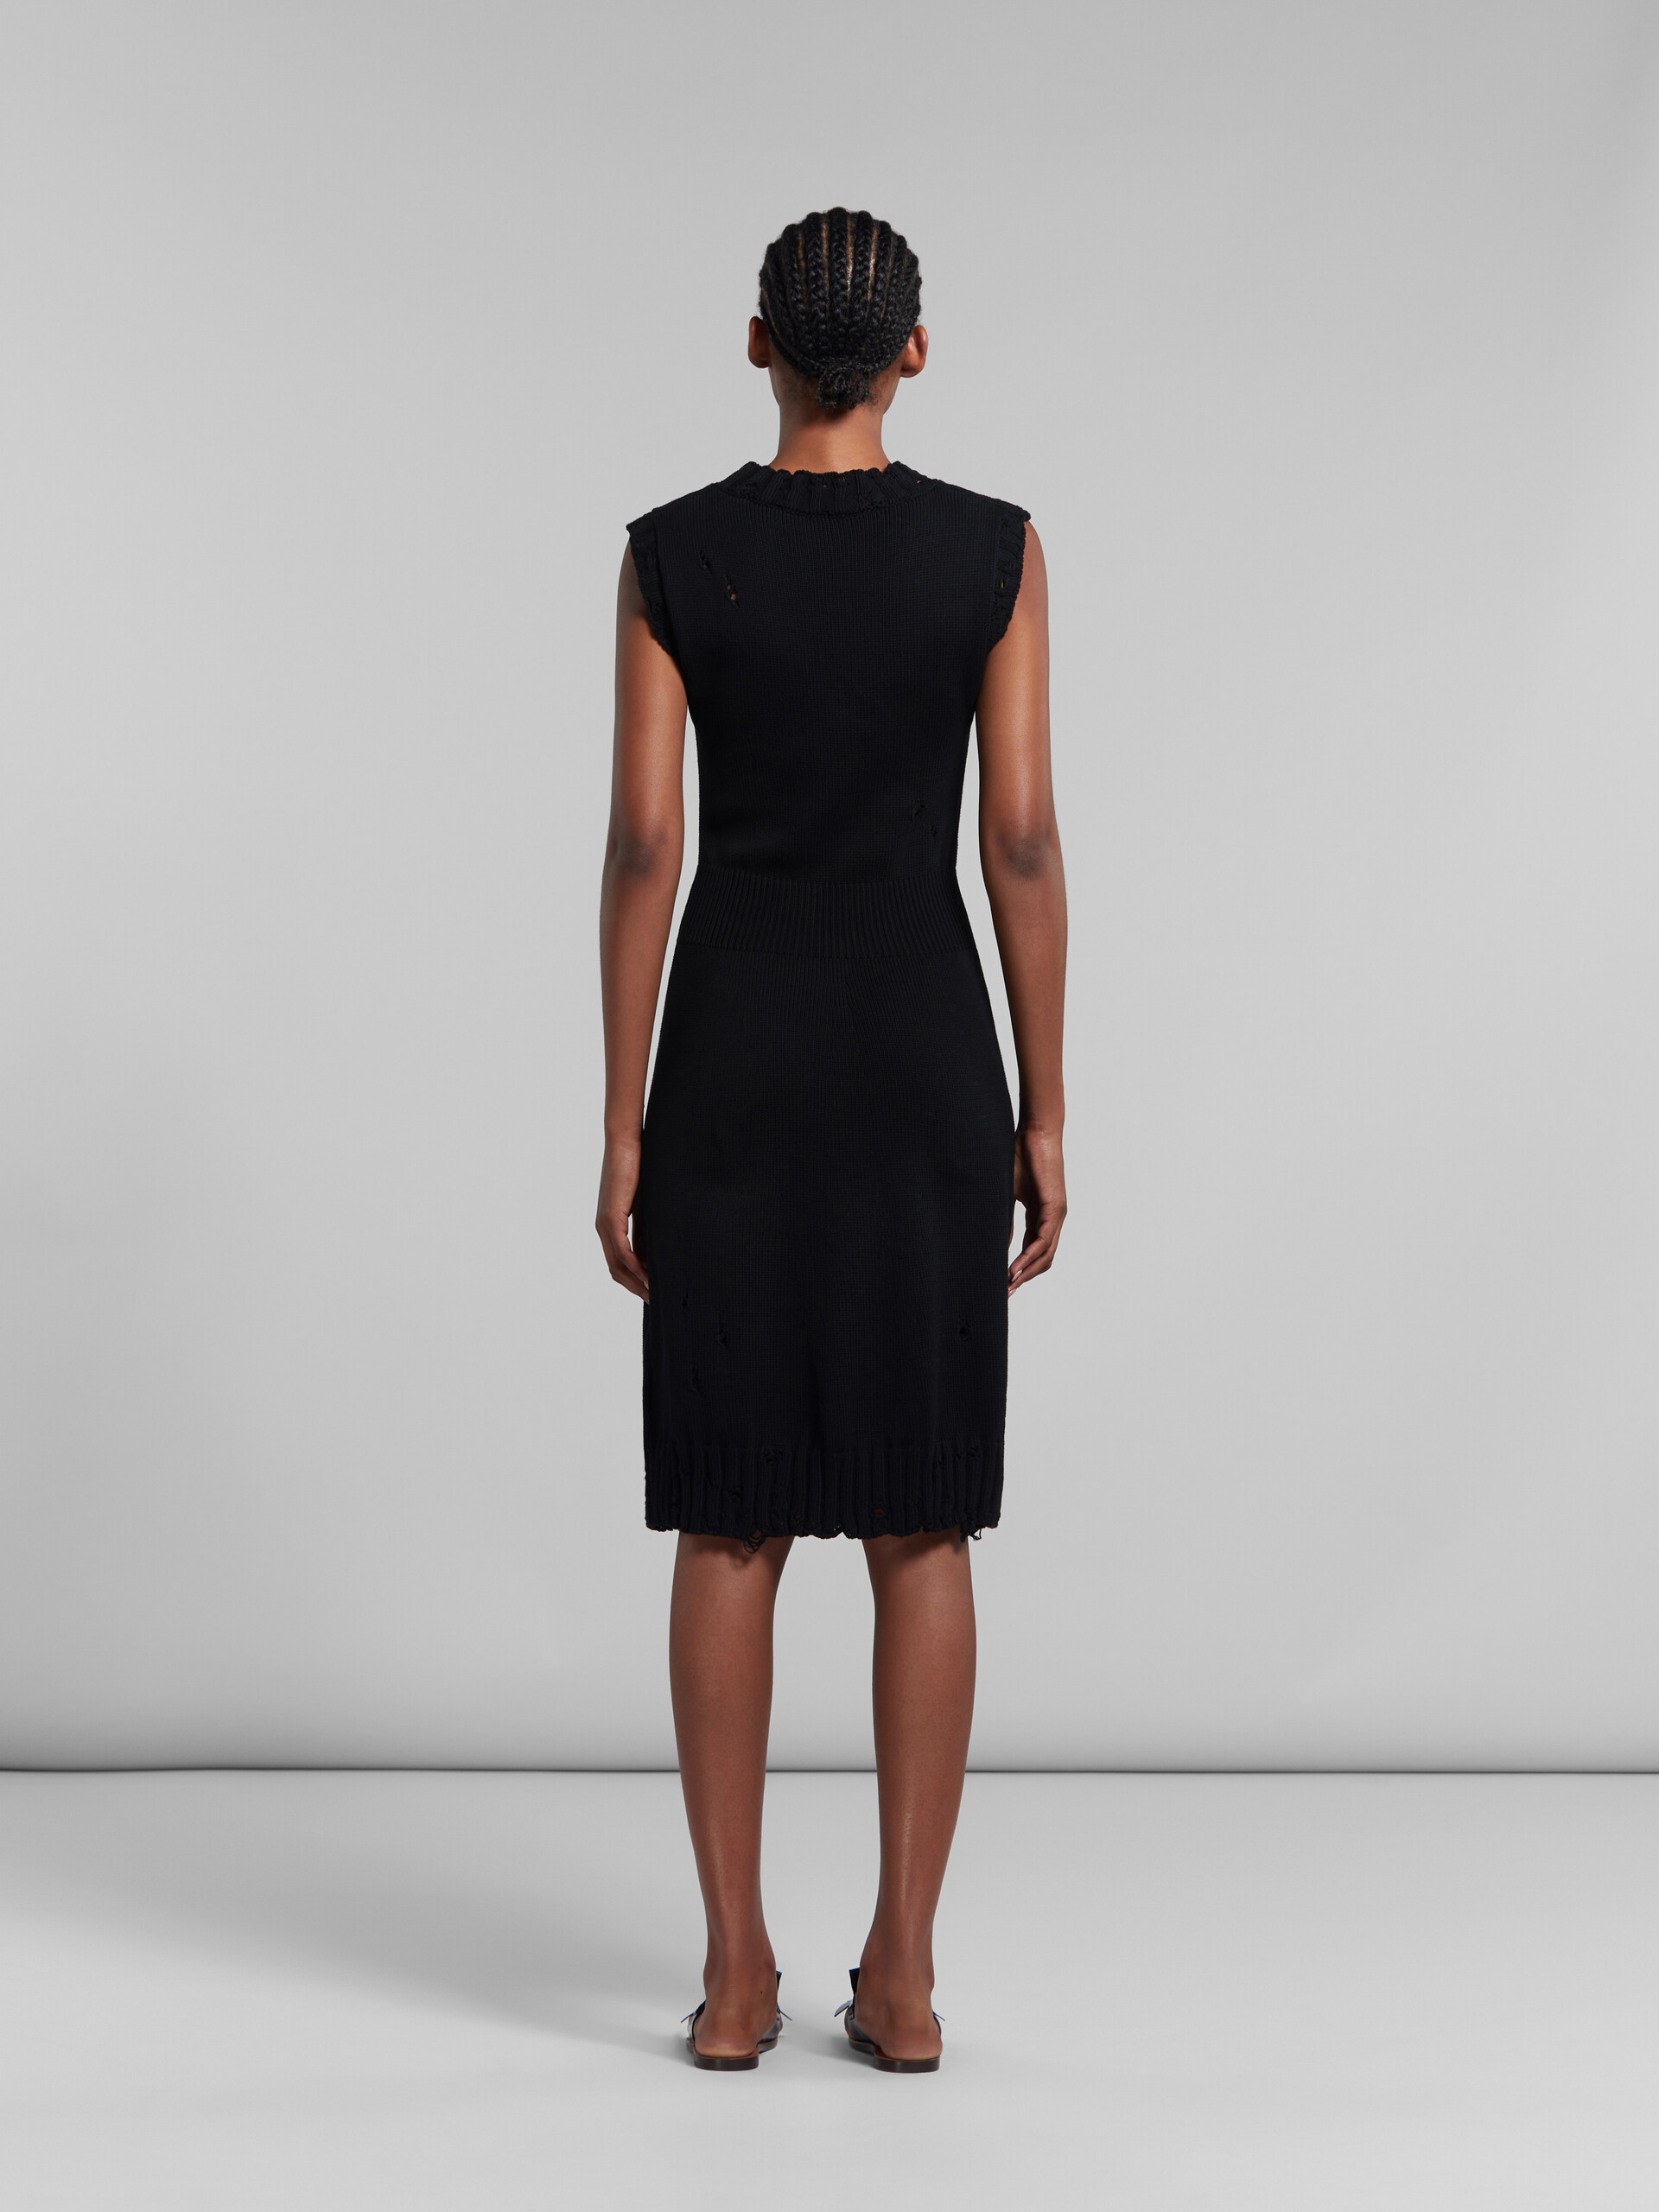 Vestido negro de punto de algodón efecto ajado - Vestidos - Image 3